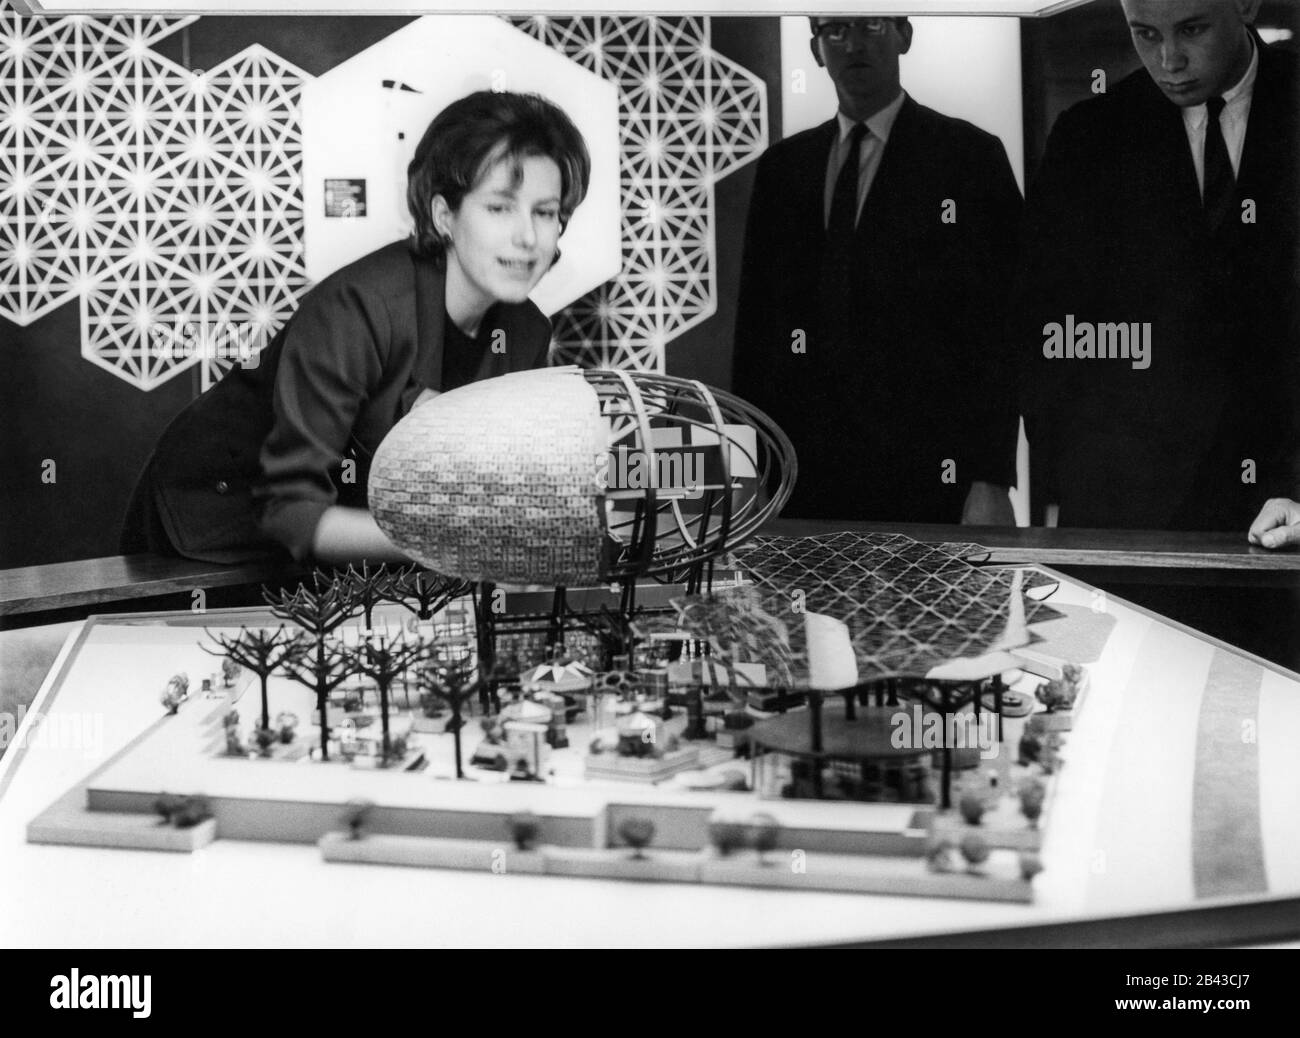 Menschen, die ein architektonisches Designmodell des IBM-Pavillons mit künstlich gefertigten Stahlbäumen und Ovoid Theatre sehen, entworfen von Charles Eames und Eero Saarinen für die New York World's Fair 1964. Das Pavillonmodell war wahrscheinlich auf der IBM Business Show in Manhattan im New York Coliseum, ca. 30.1963, zu sehen. Stockfoto